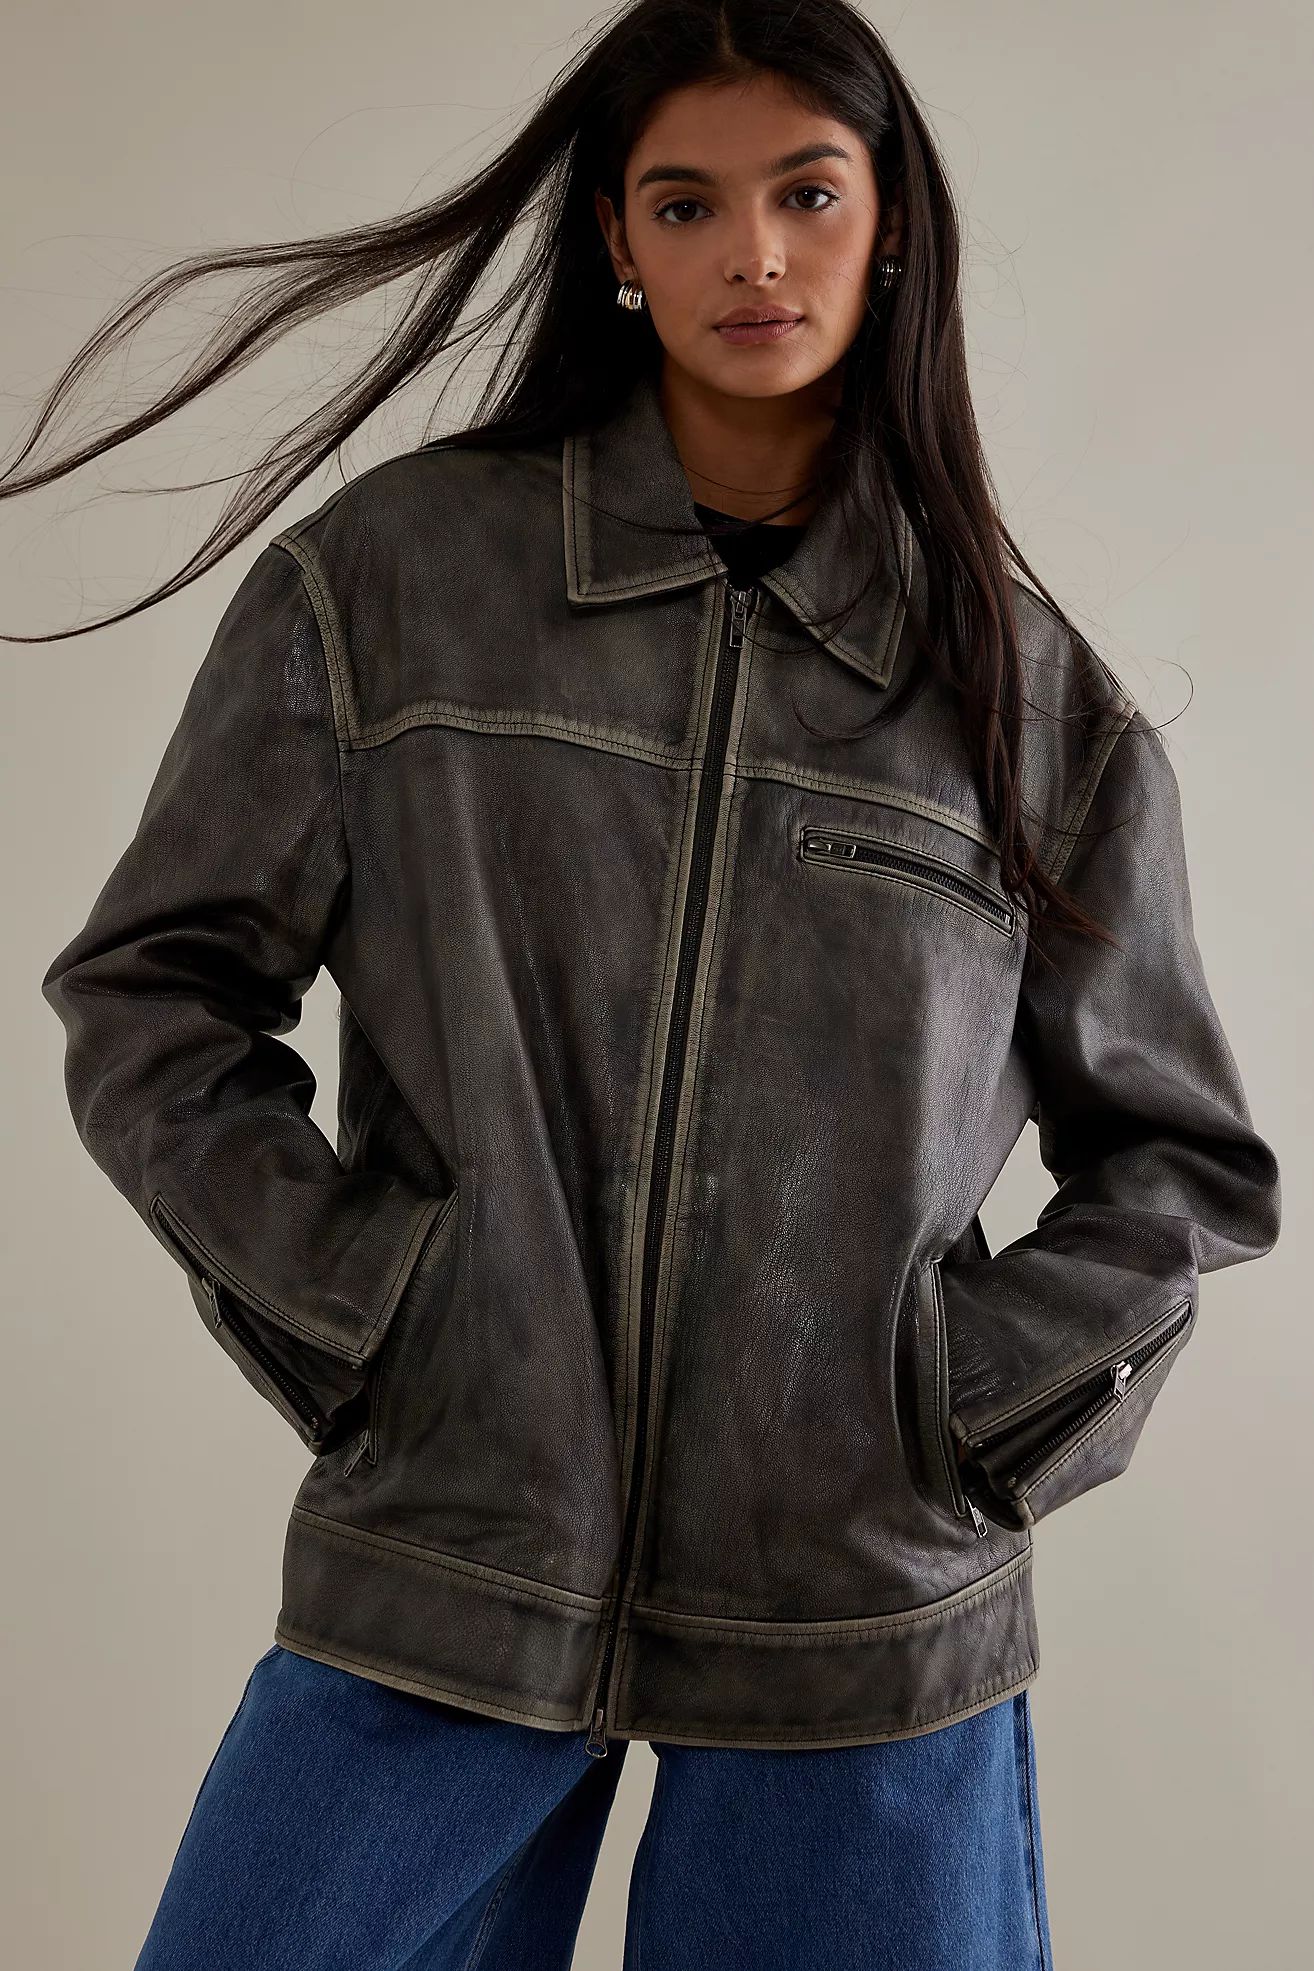 ALIGNE Leroy Boxy Collar Leather Jacket | Anthropologie (UK)